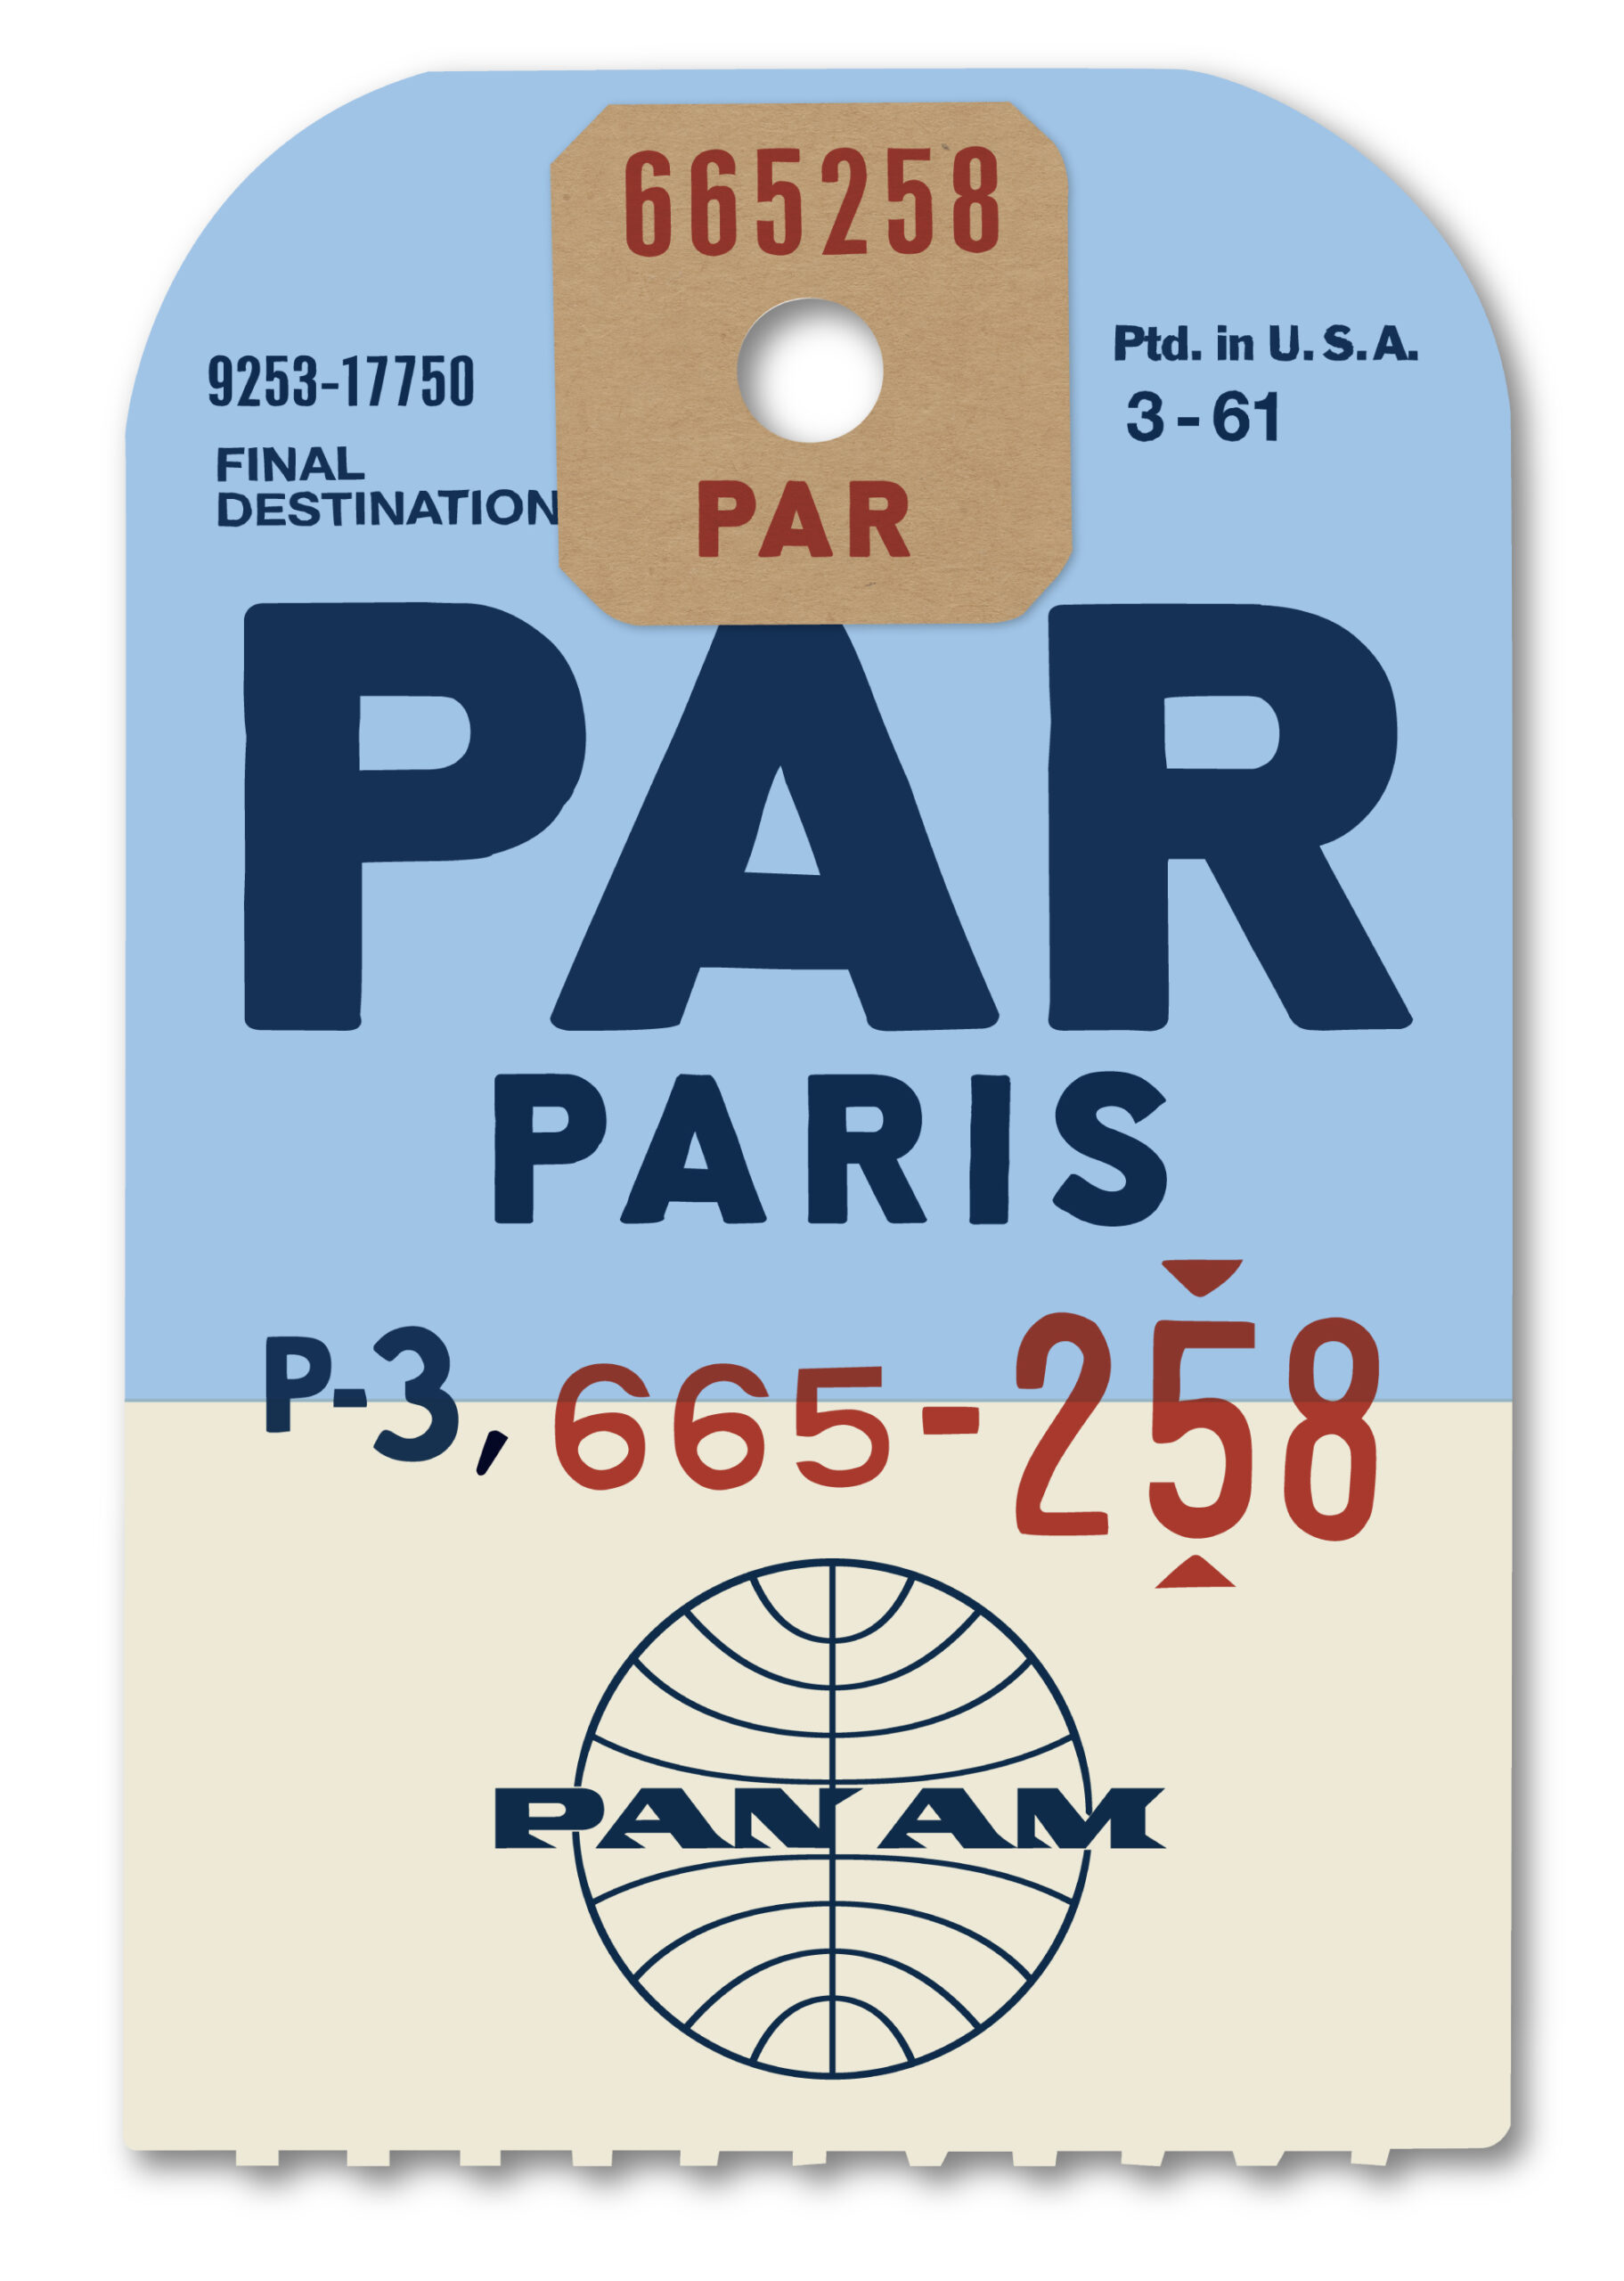 Pan Am Paris Luggage Tag